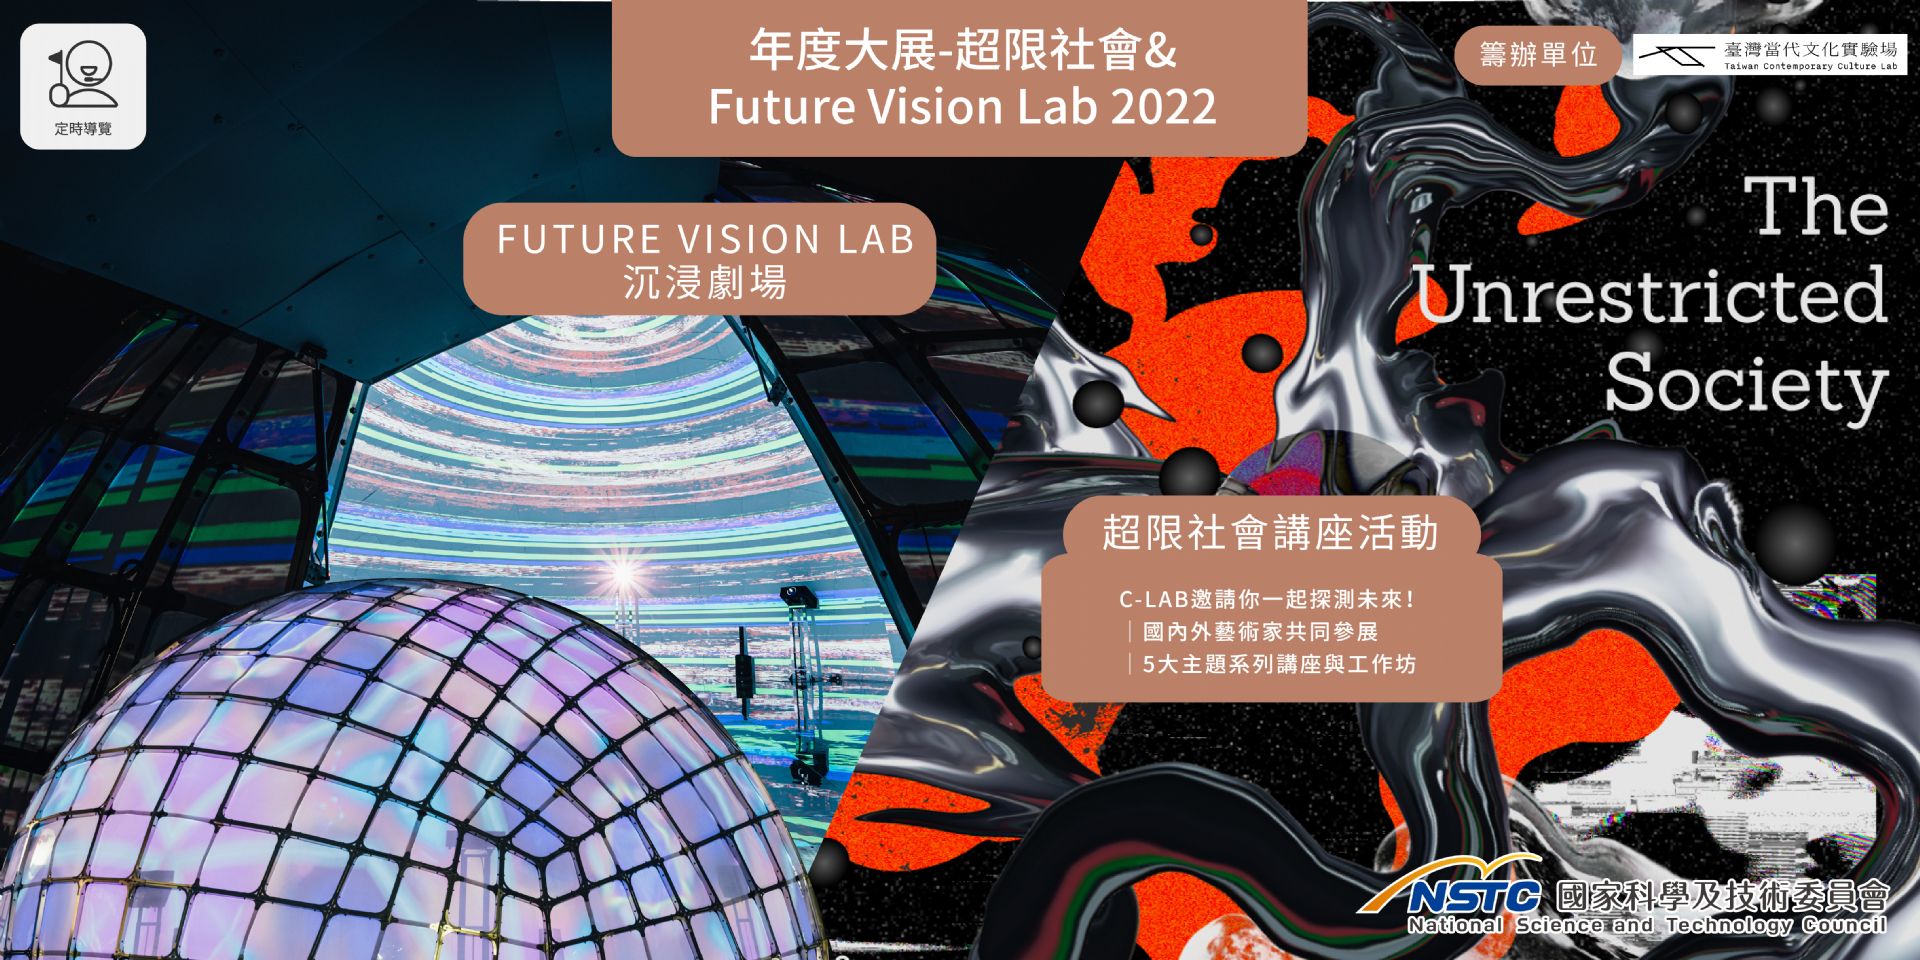  年度大展 - 超限社會&  FUTURE VISION LAB 2022